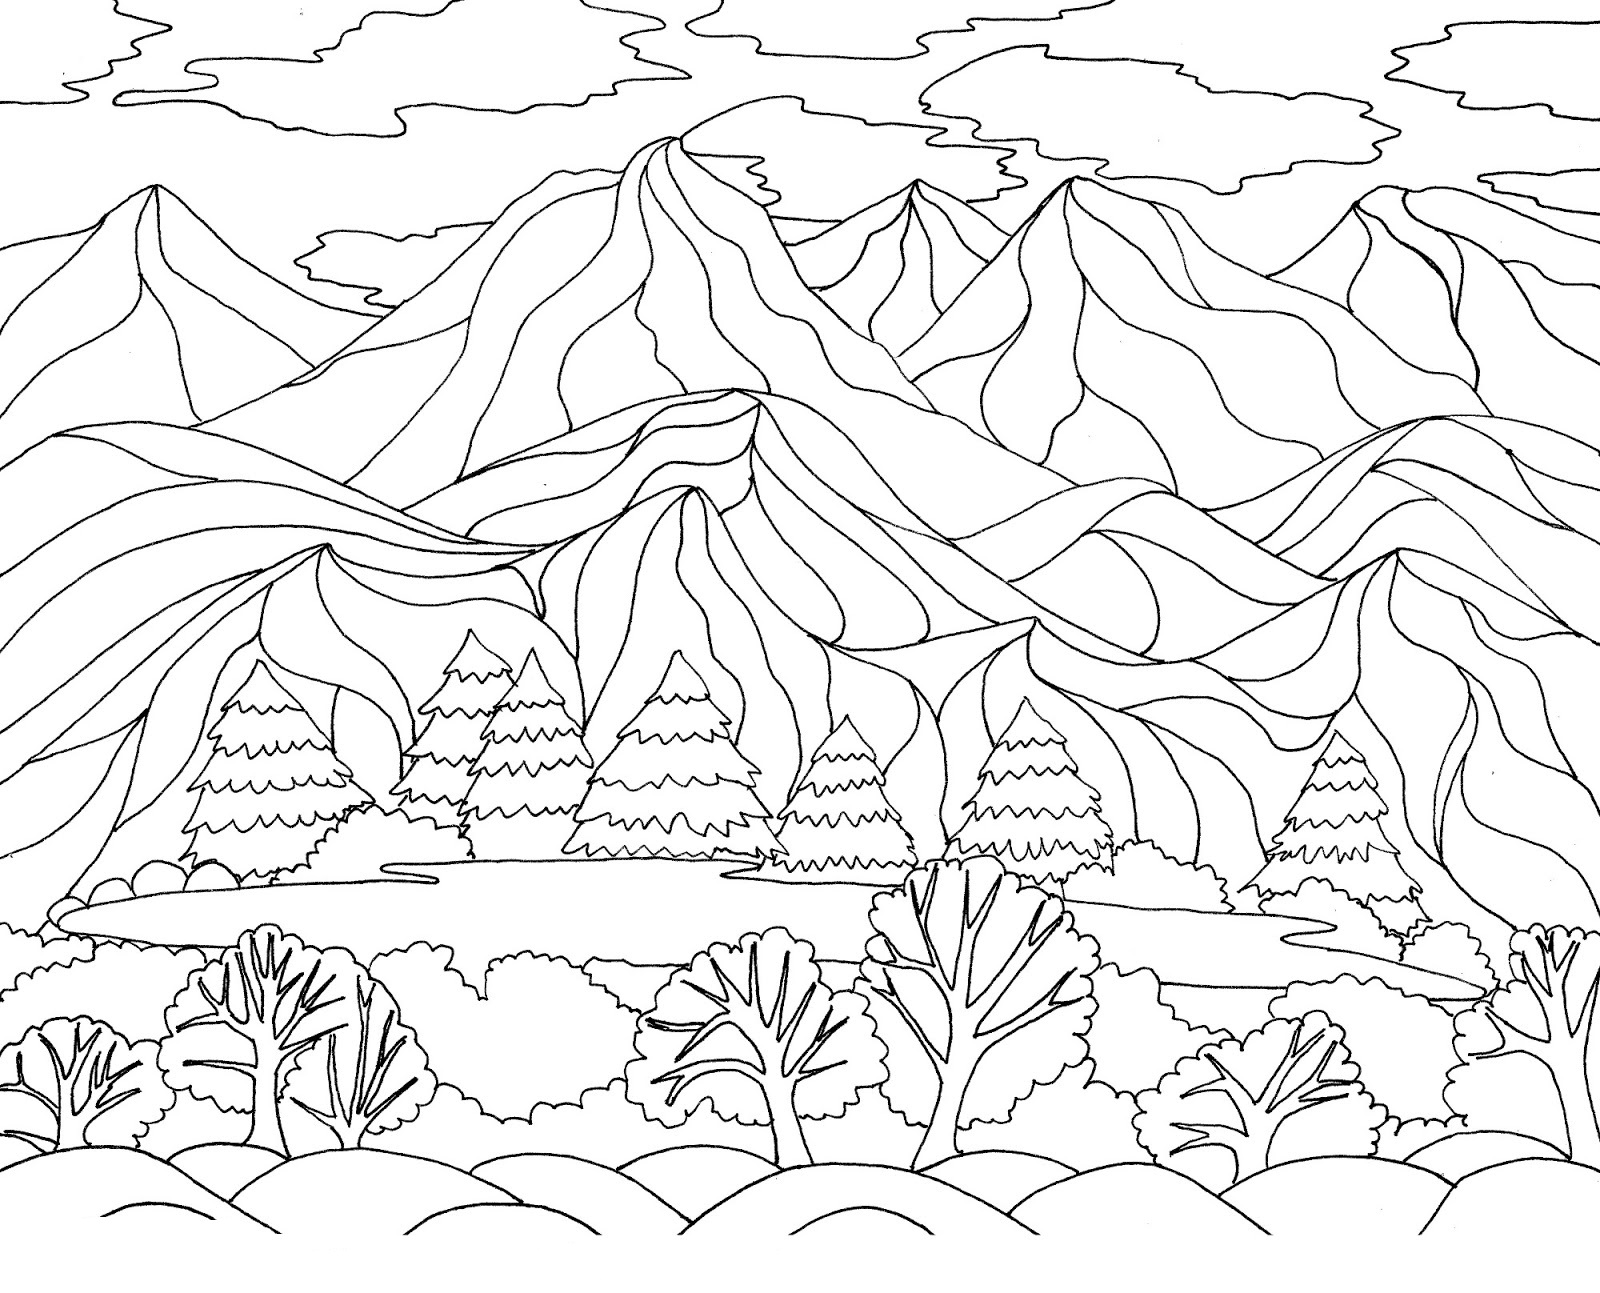 Dibujos para colorear de Naturaleza. Paisaje, bosque, montañas, mar, isla